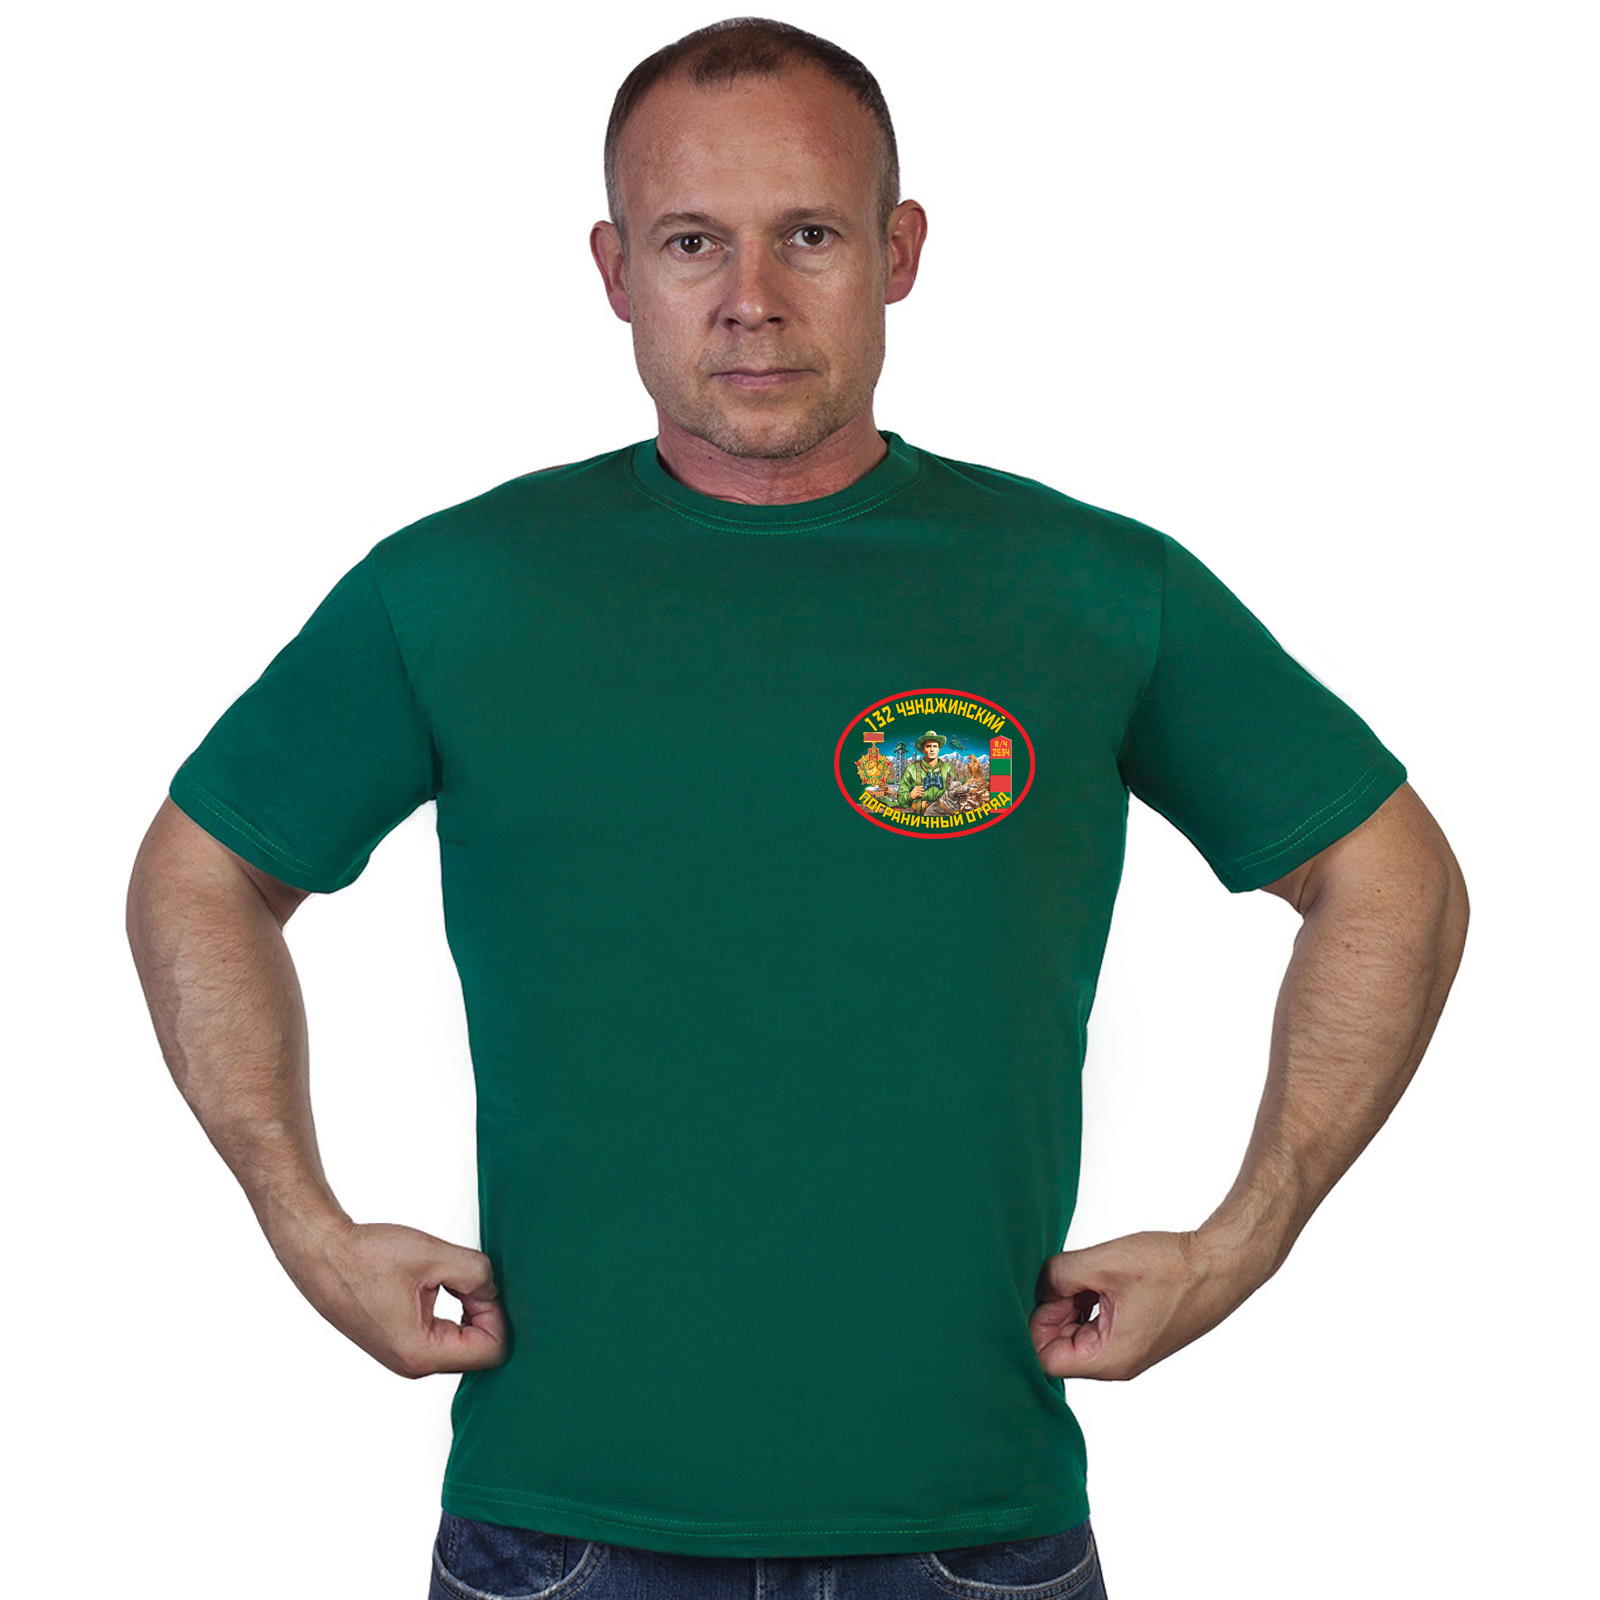 Купить футболку 132 Чунджинский пограничный отряд